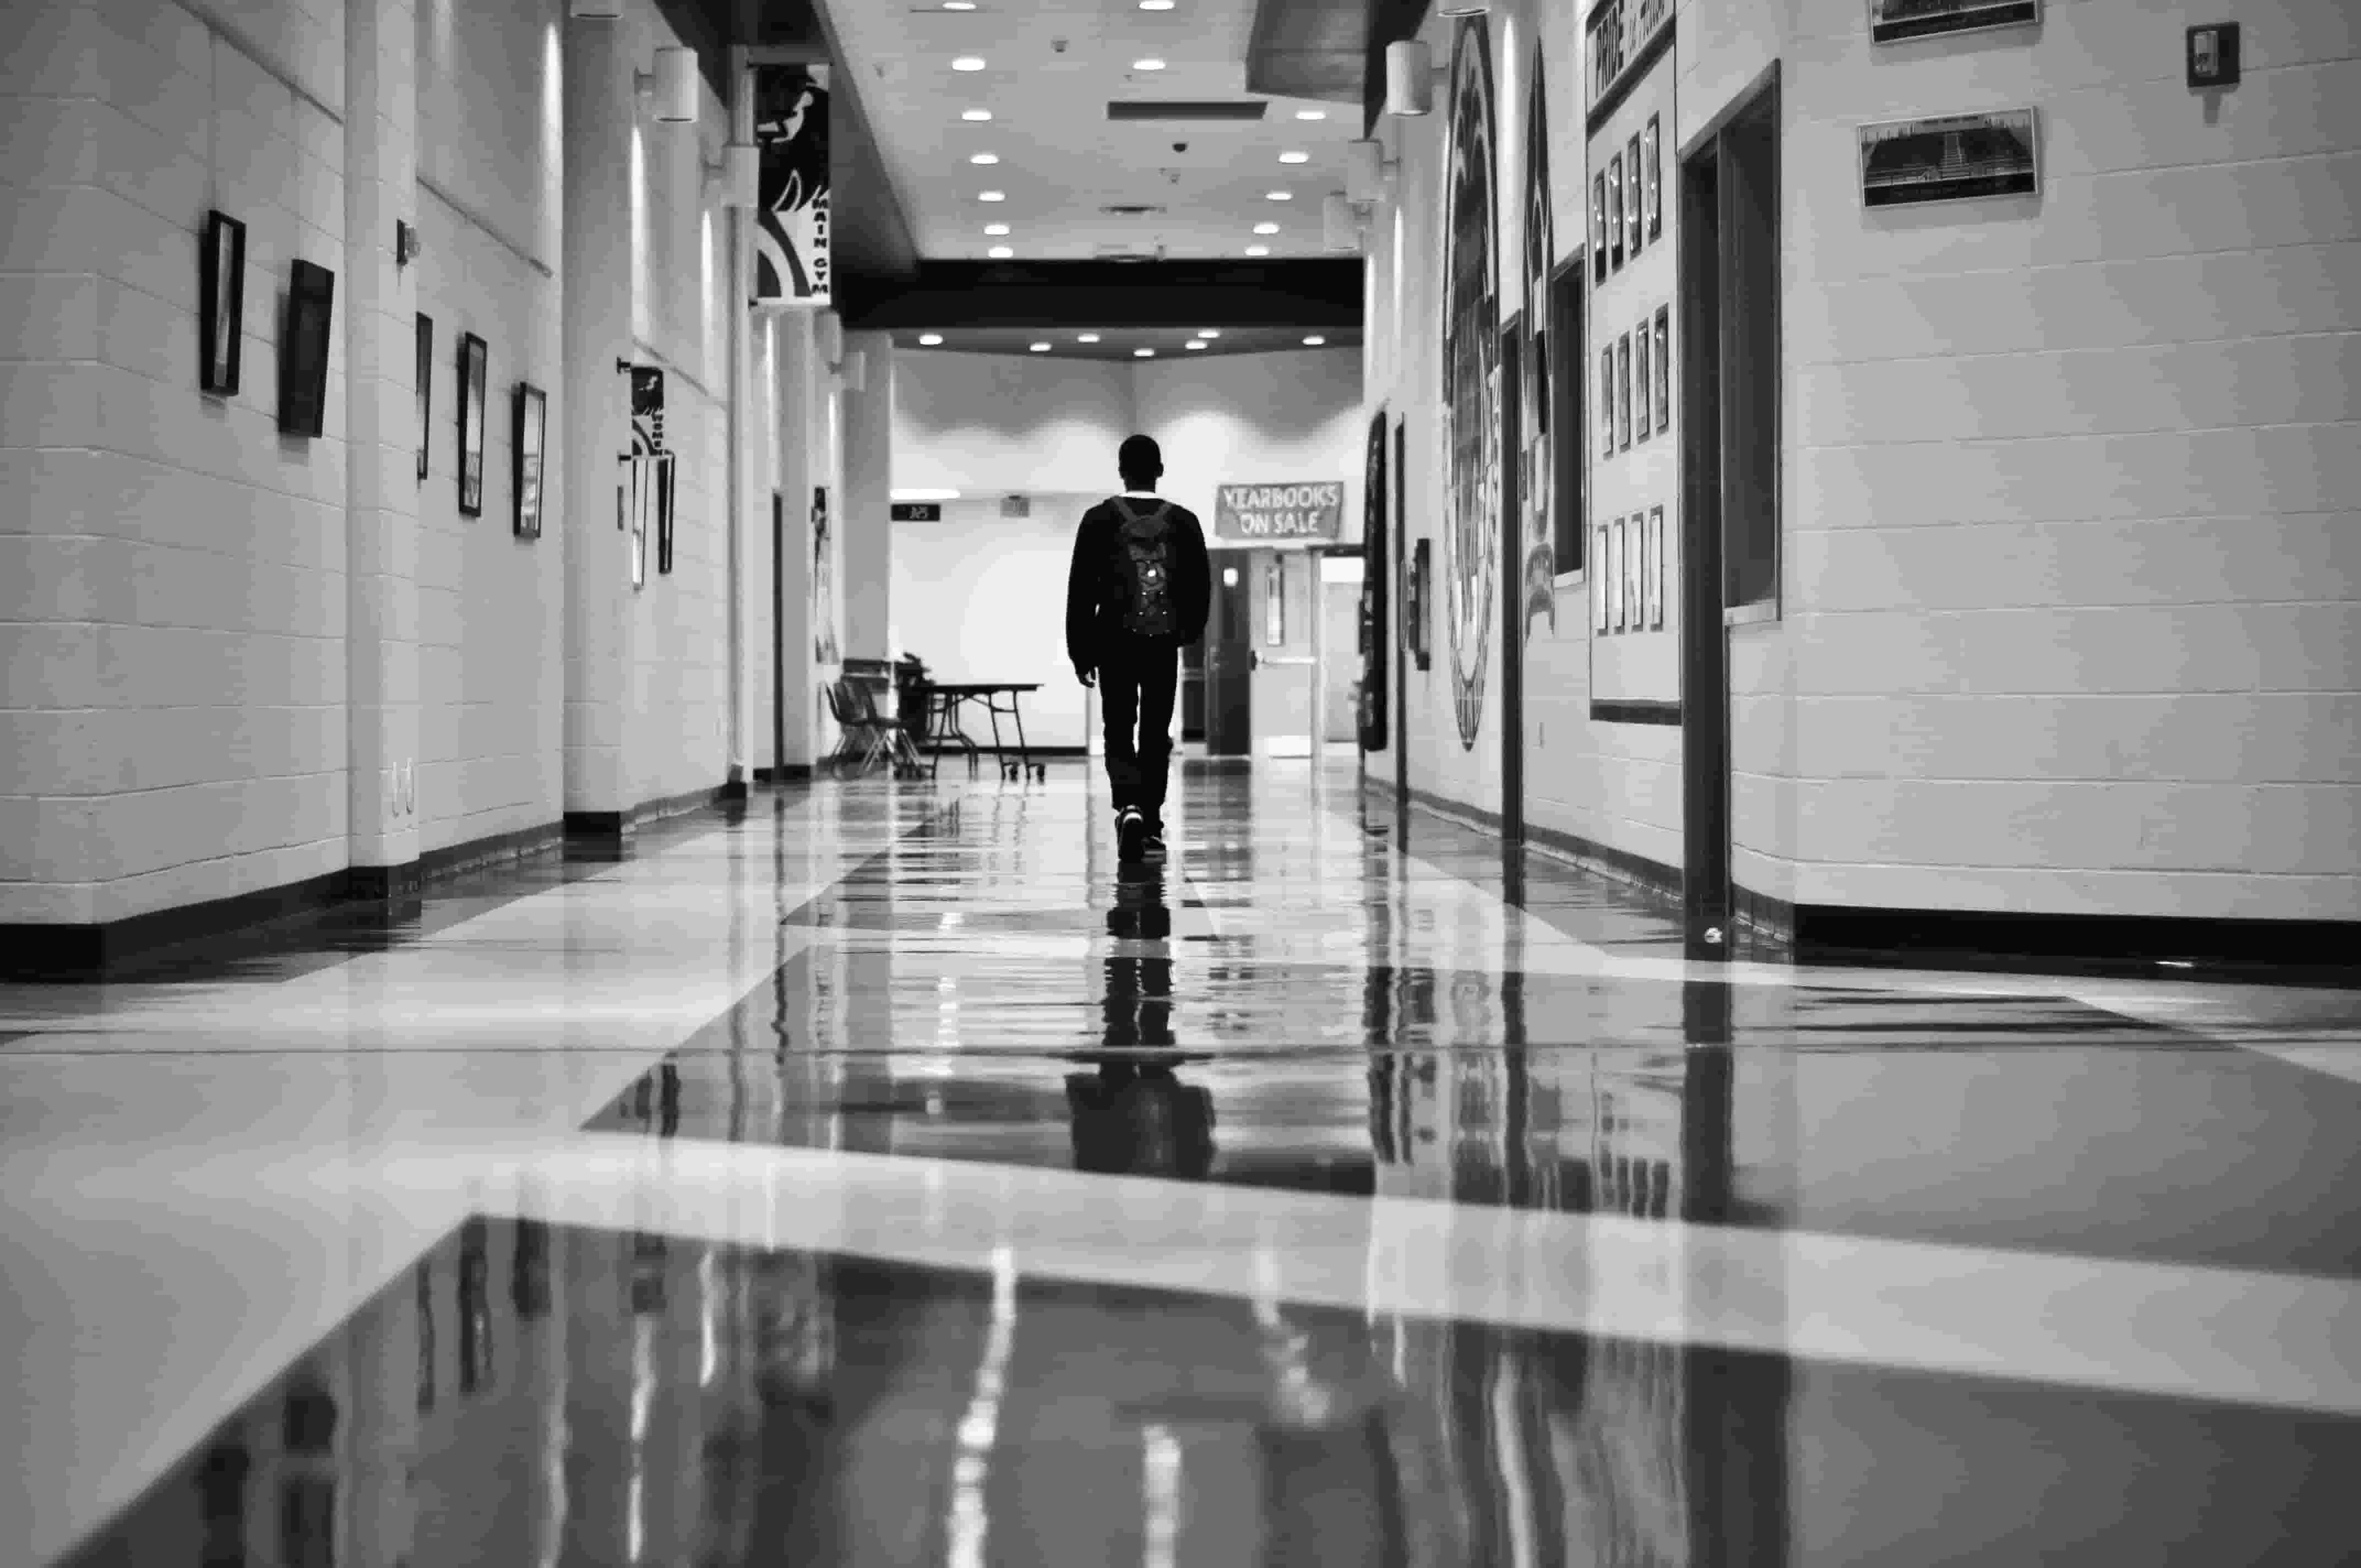 Lone figure walking in high school hallway